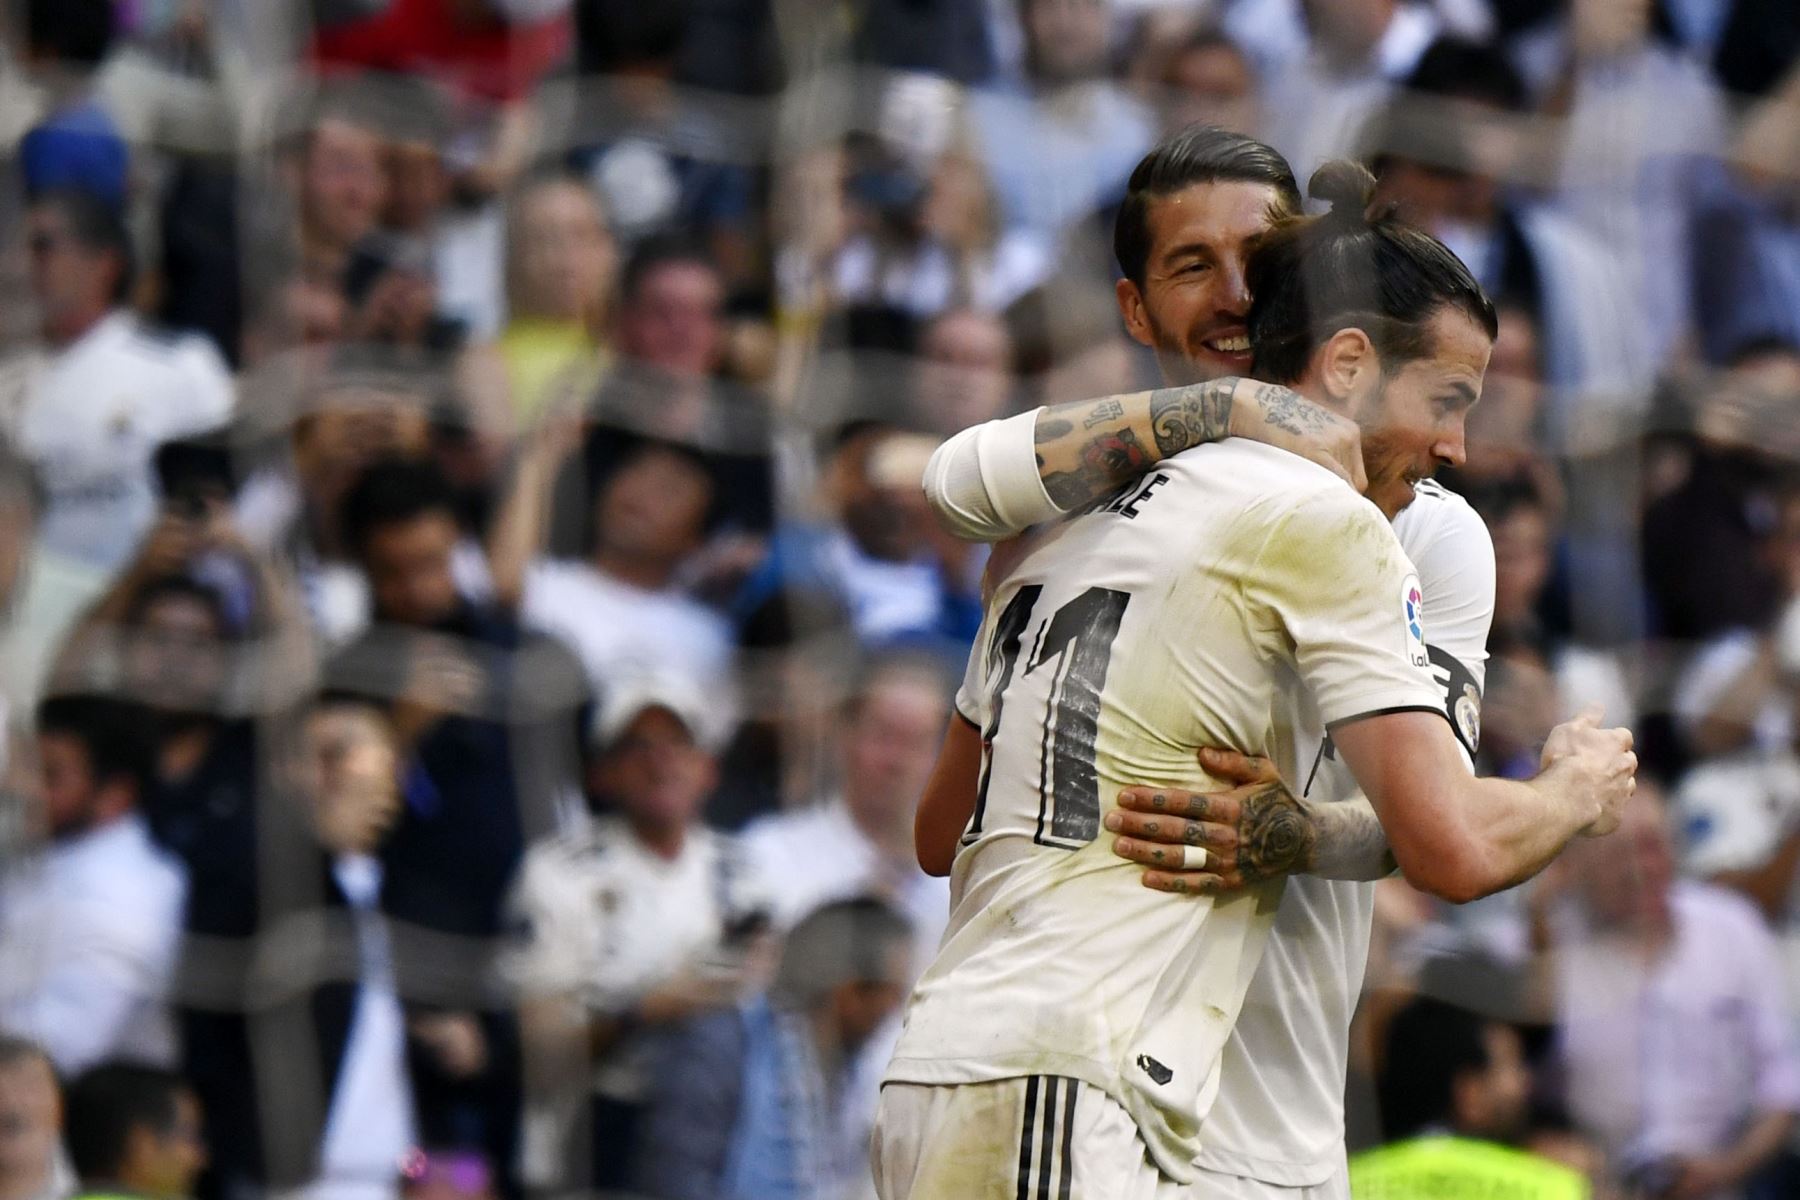 El delantero galÃ©s del Real Madrid Gareth Bale (R) celebra su gol con el defensor espaÃ±ol del Real Madrid Sergio Ramos durante el partido de fÃºtbol de la liga espaÃ±ola entre el Real Madrid CF y el RC Celta de Vigo.Foto:AFP